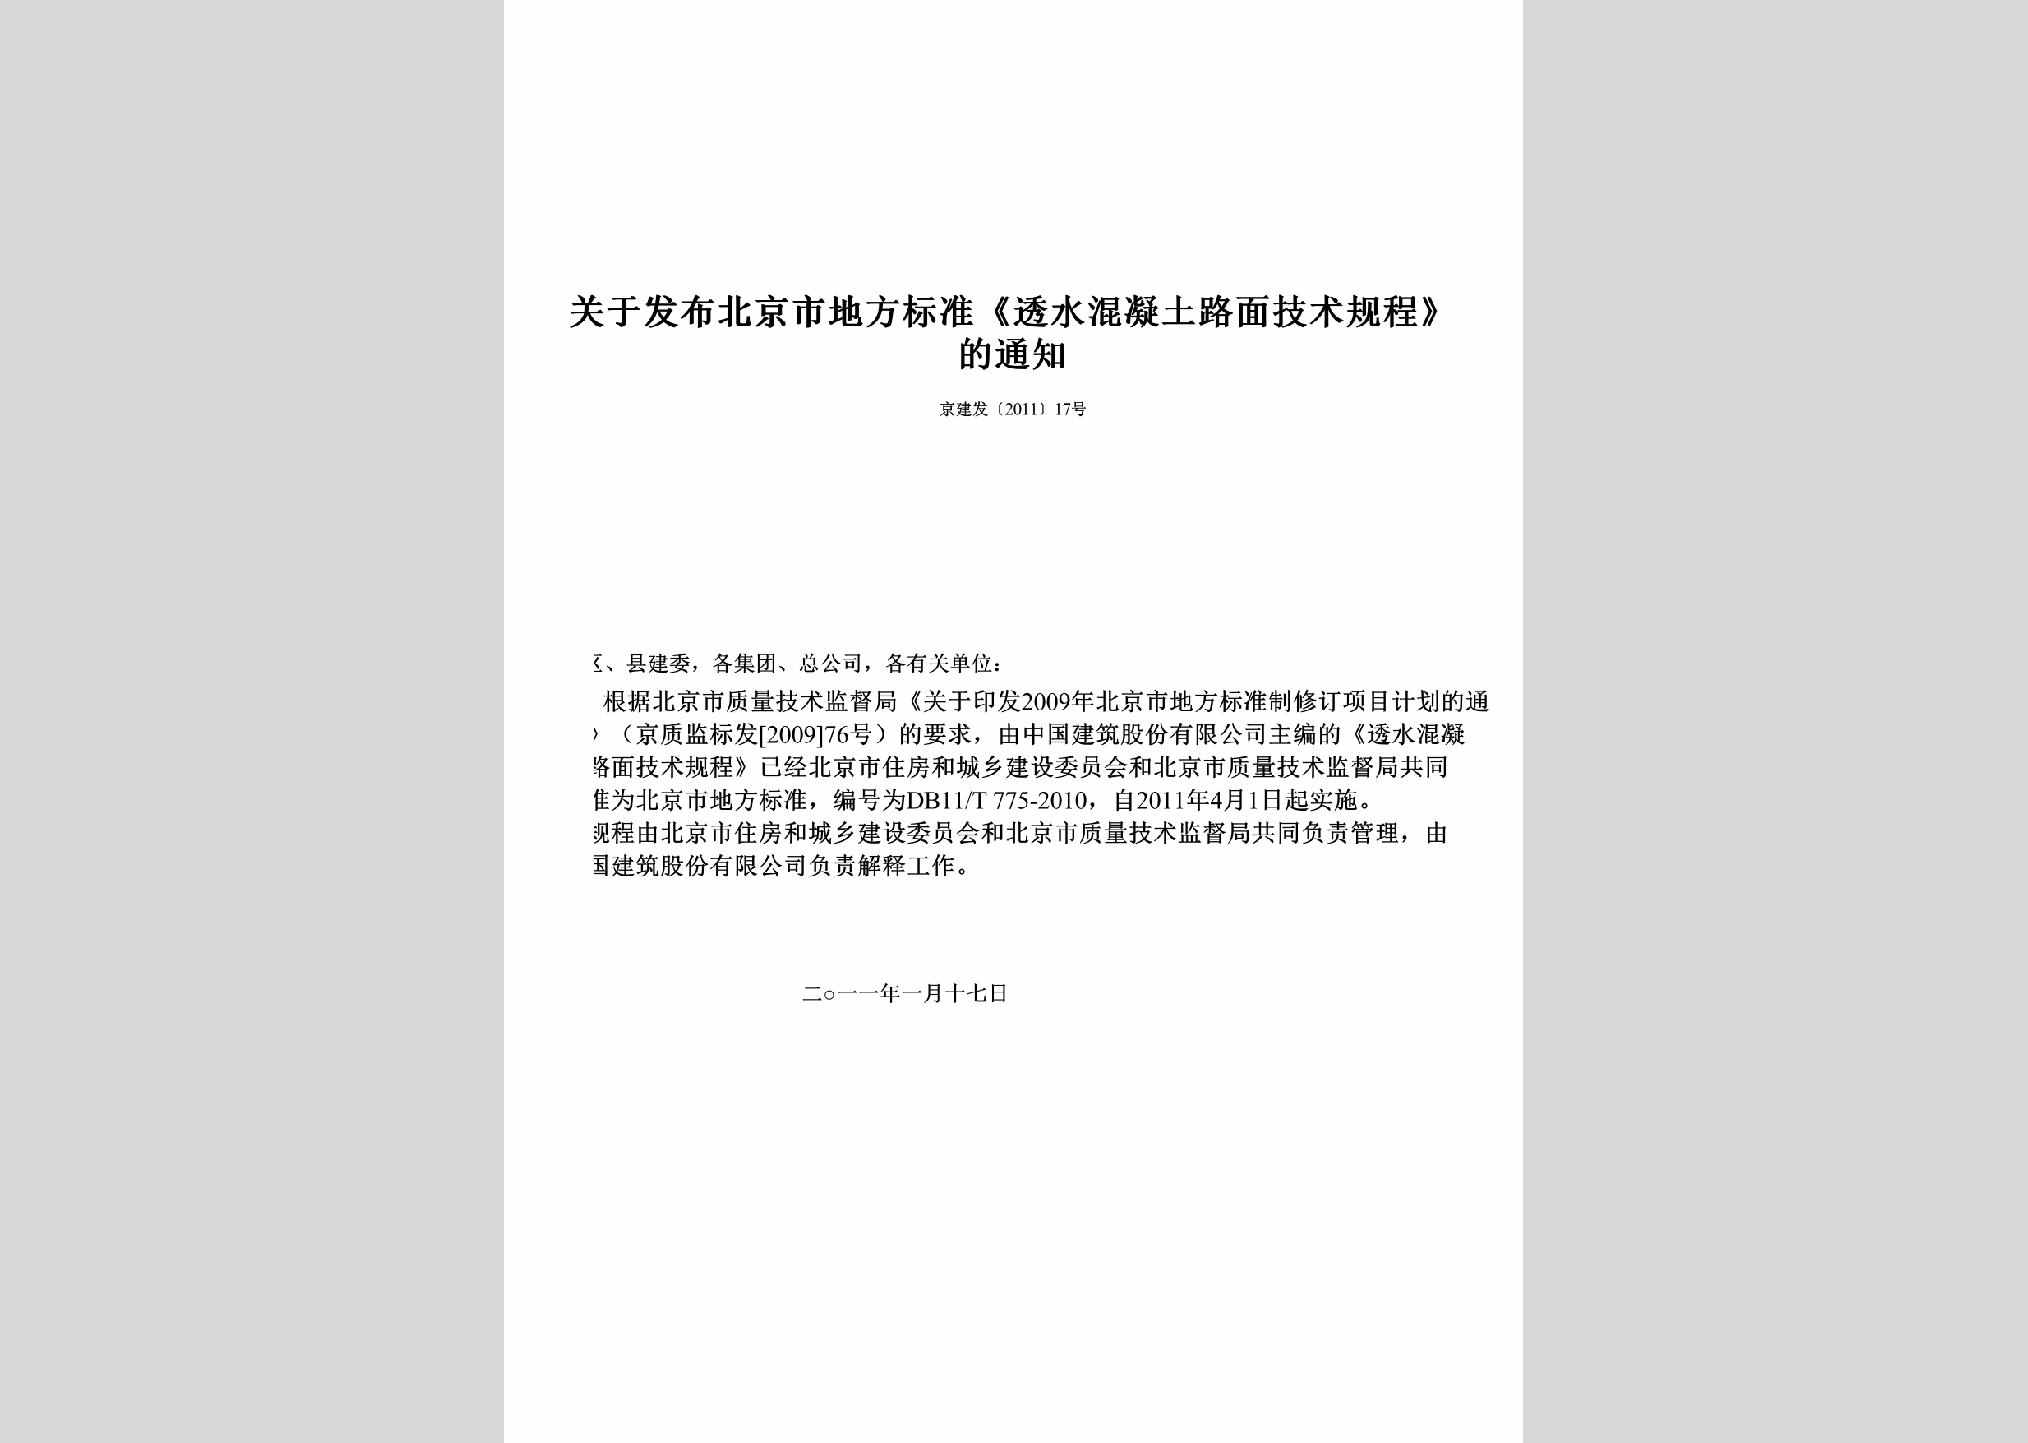 京建发[2011]17号：关于发布北京市地方标准《透水混凝土路面技术规程》的通知